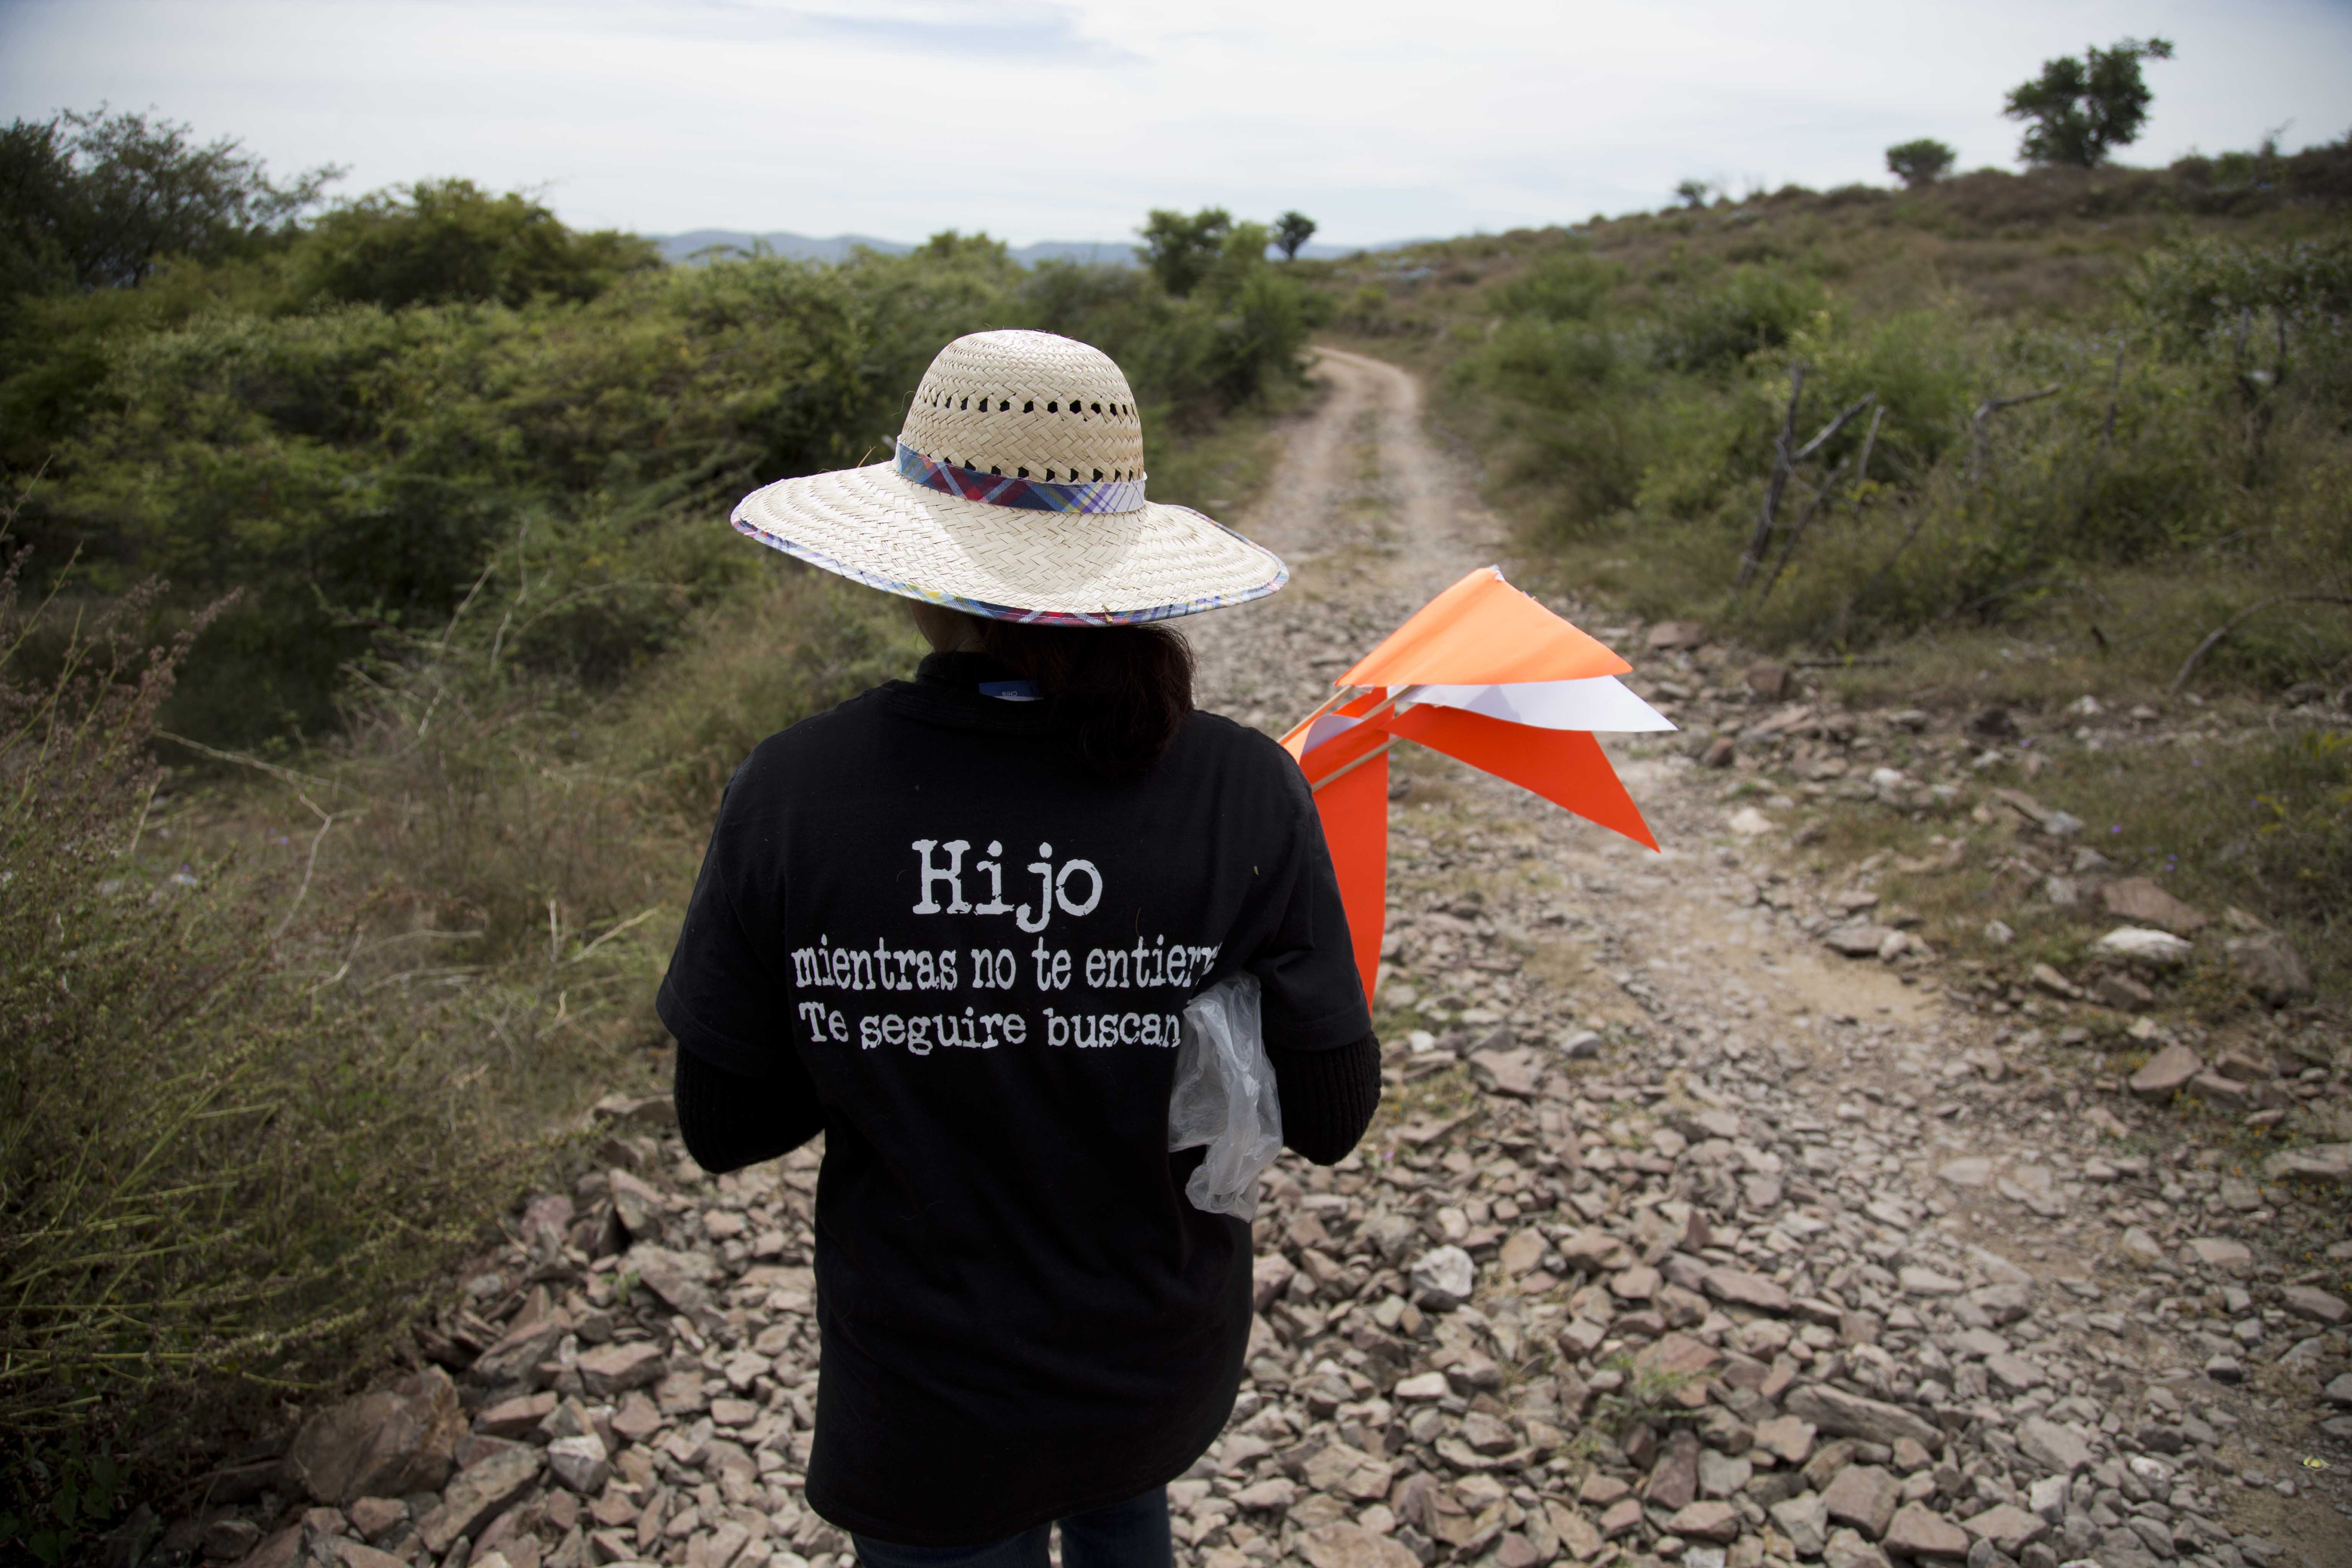  Forman brigadas de búsqueda de desaparecidos; iniciarán en Veracruz